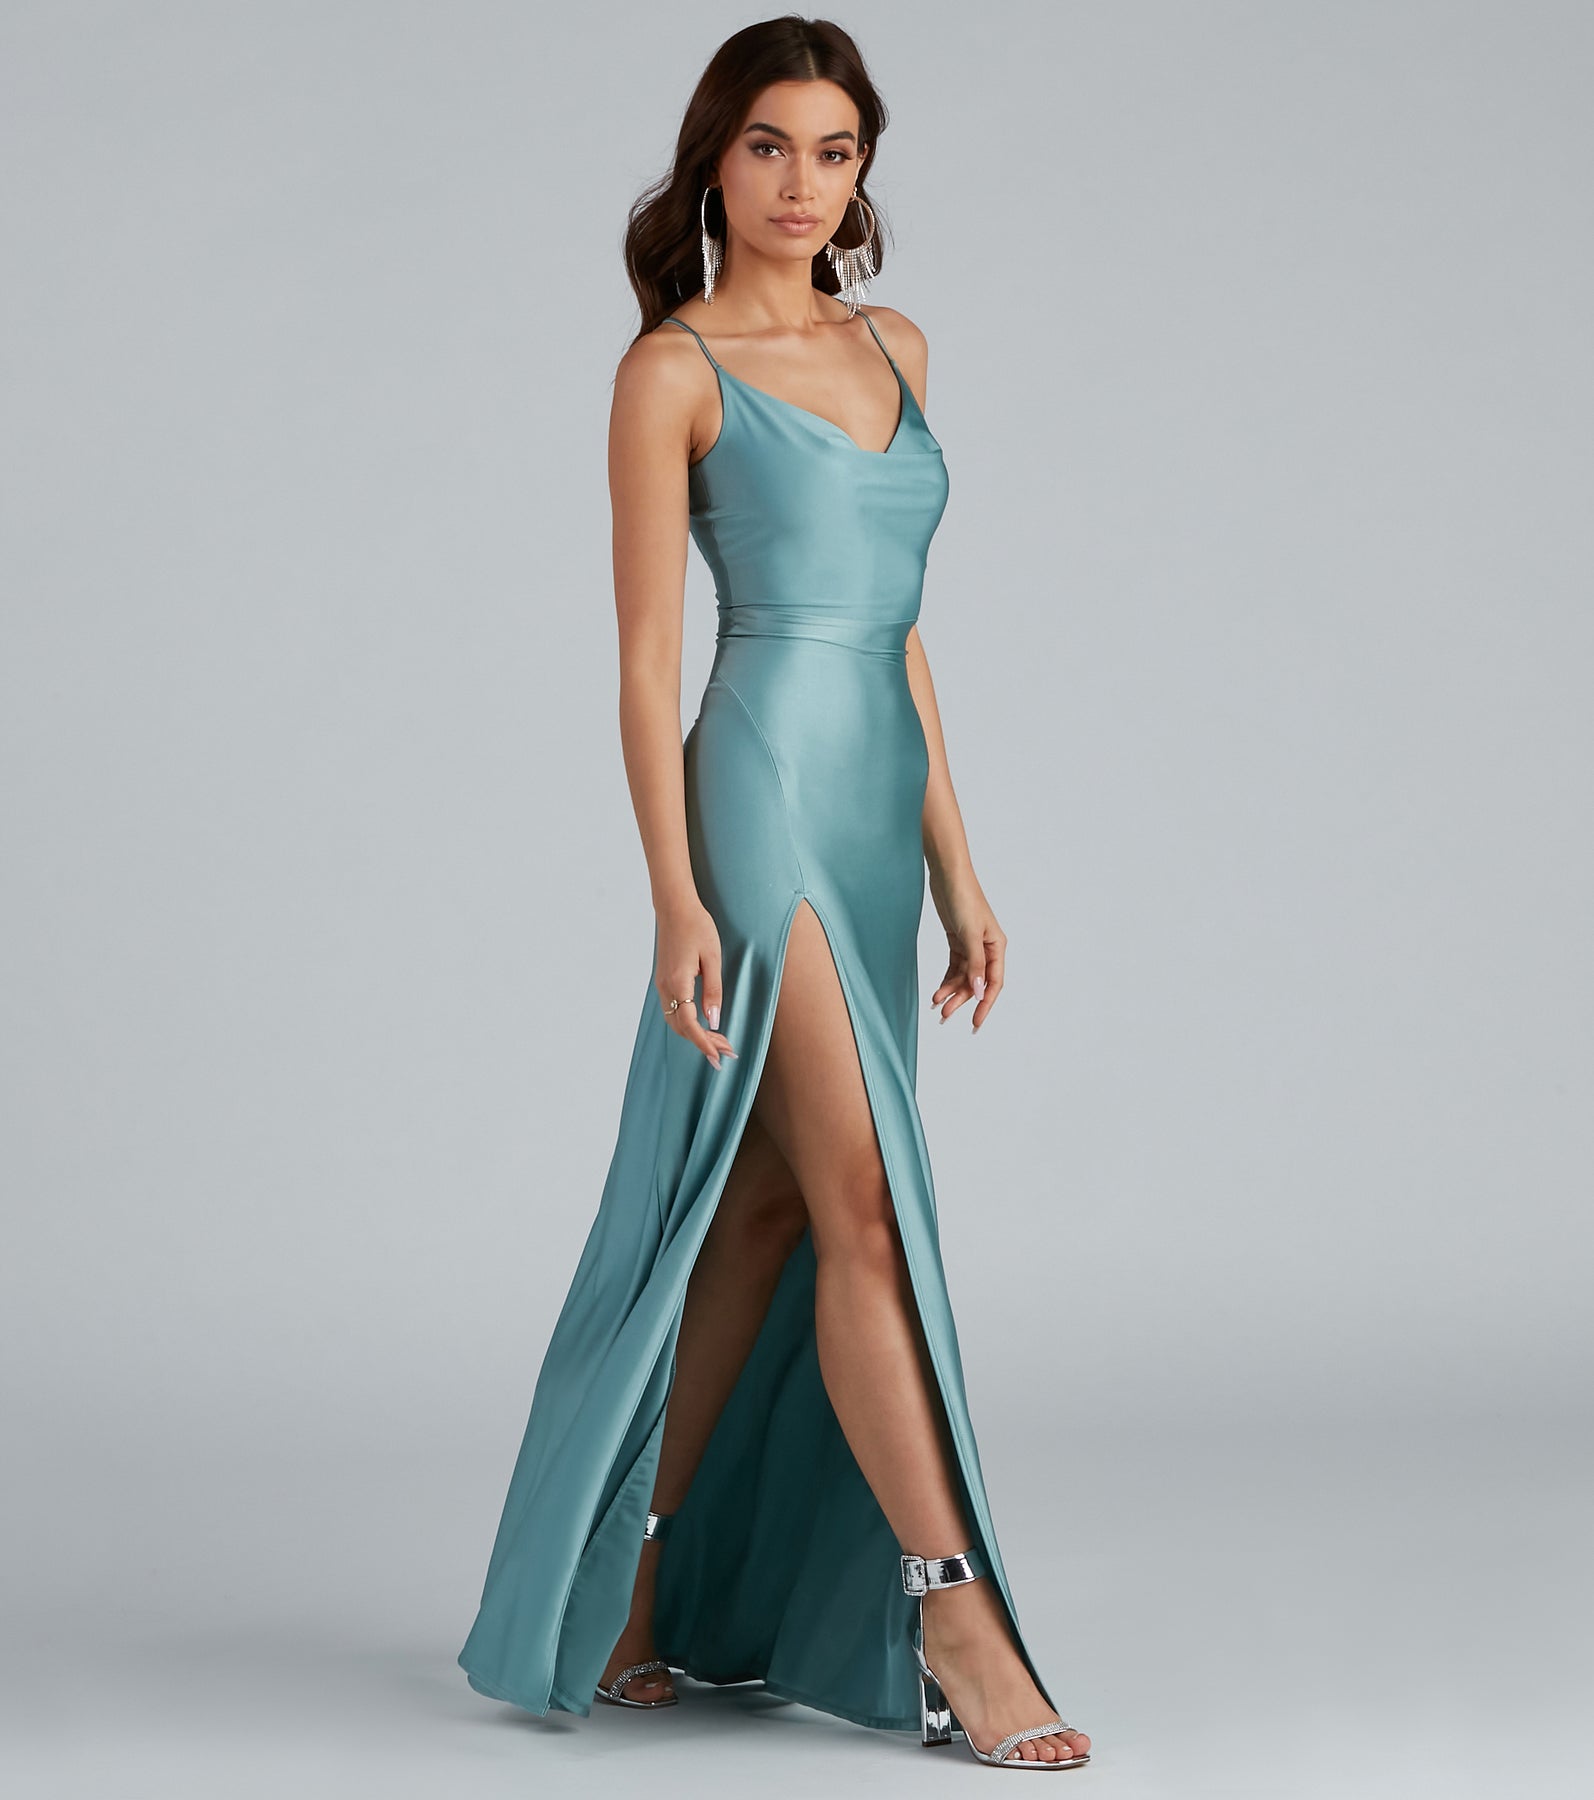 Lessie Formal High Slit A-Line Dress & Windsor